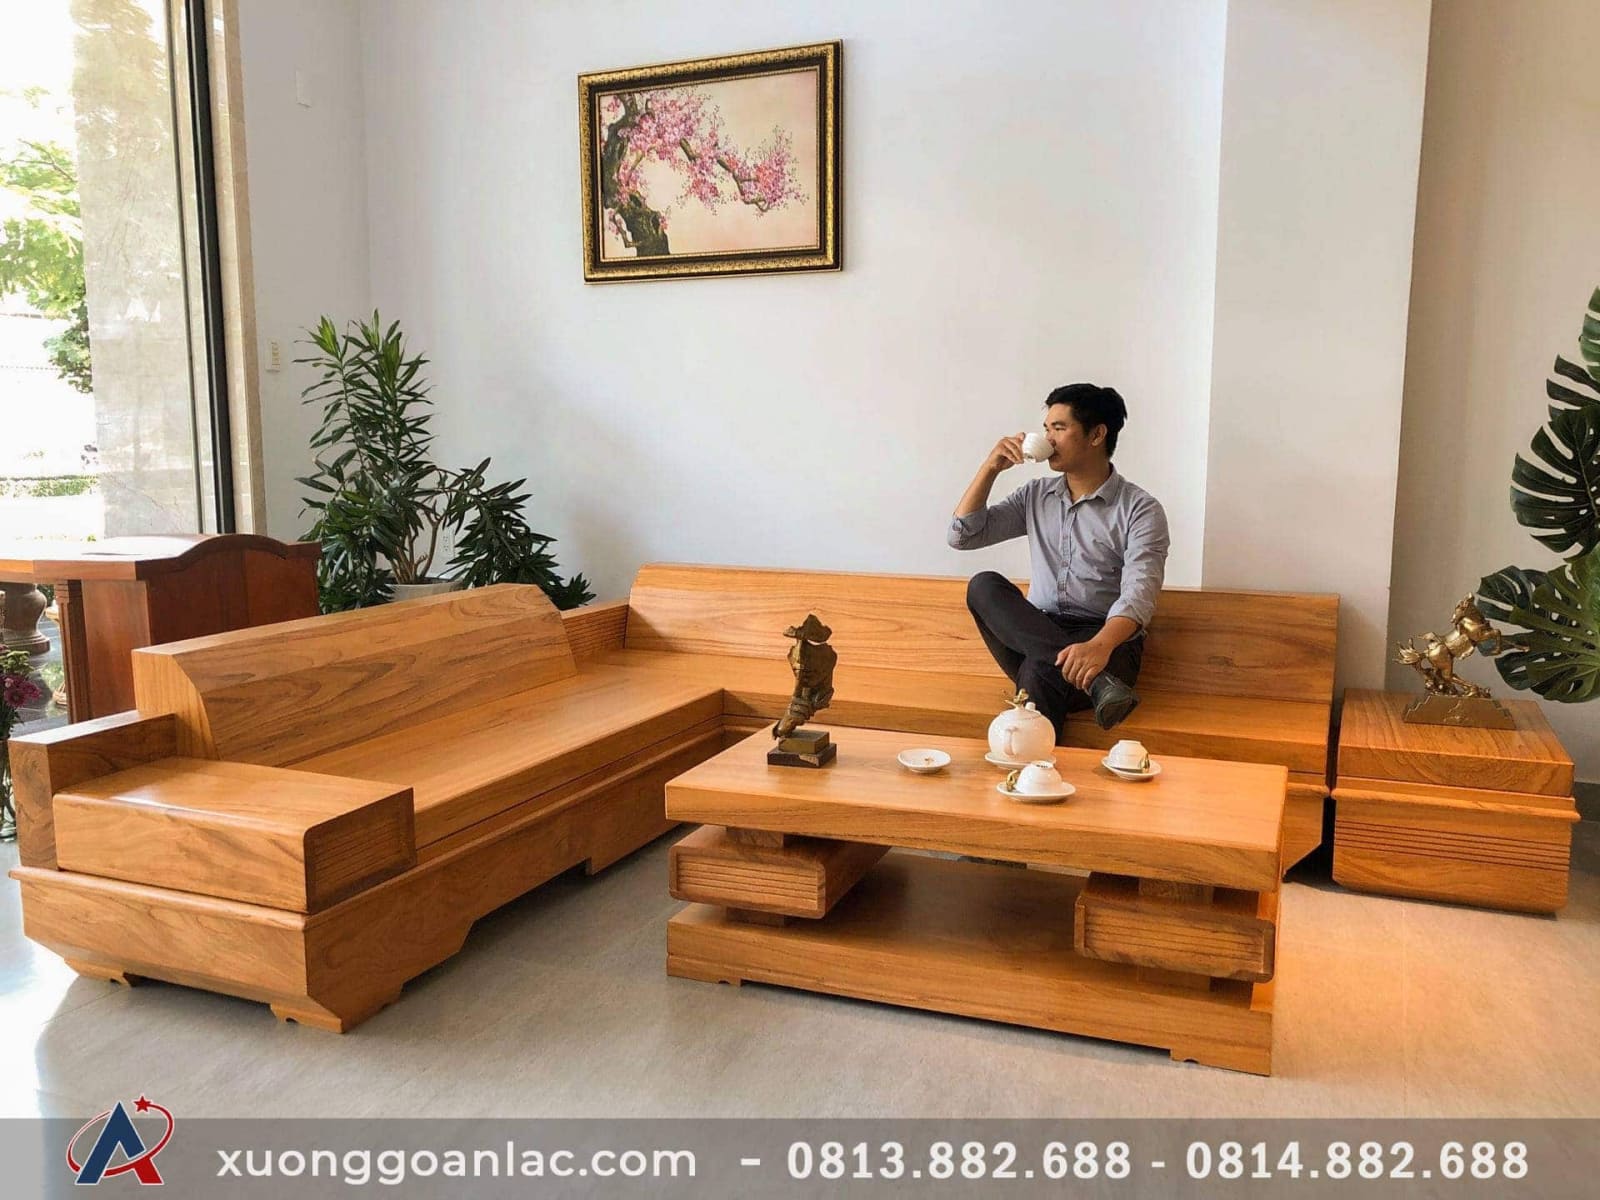 Sofa gỗ gõ đỏ Thái Bình: Với màu sắc đặc trưng của gỗ gõ đỏ, sofa gỗ gõ đỏ tại Thái Bình là điểm tựa cho sự sang trọng và đẳng cấp của không gian sống. Hãy cùng chúng tôi tìm hiểu những sản phẩm sofa gỗ gõ đỏ độc đáo, được chế tác bởi những người thợ tài ba tại địa phương, mang lại sự hoàn hảo cho căn phòng của bạn.